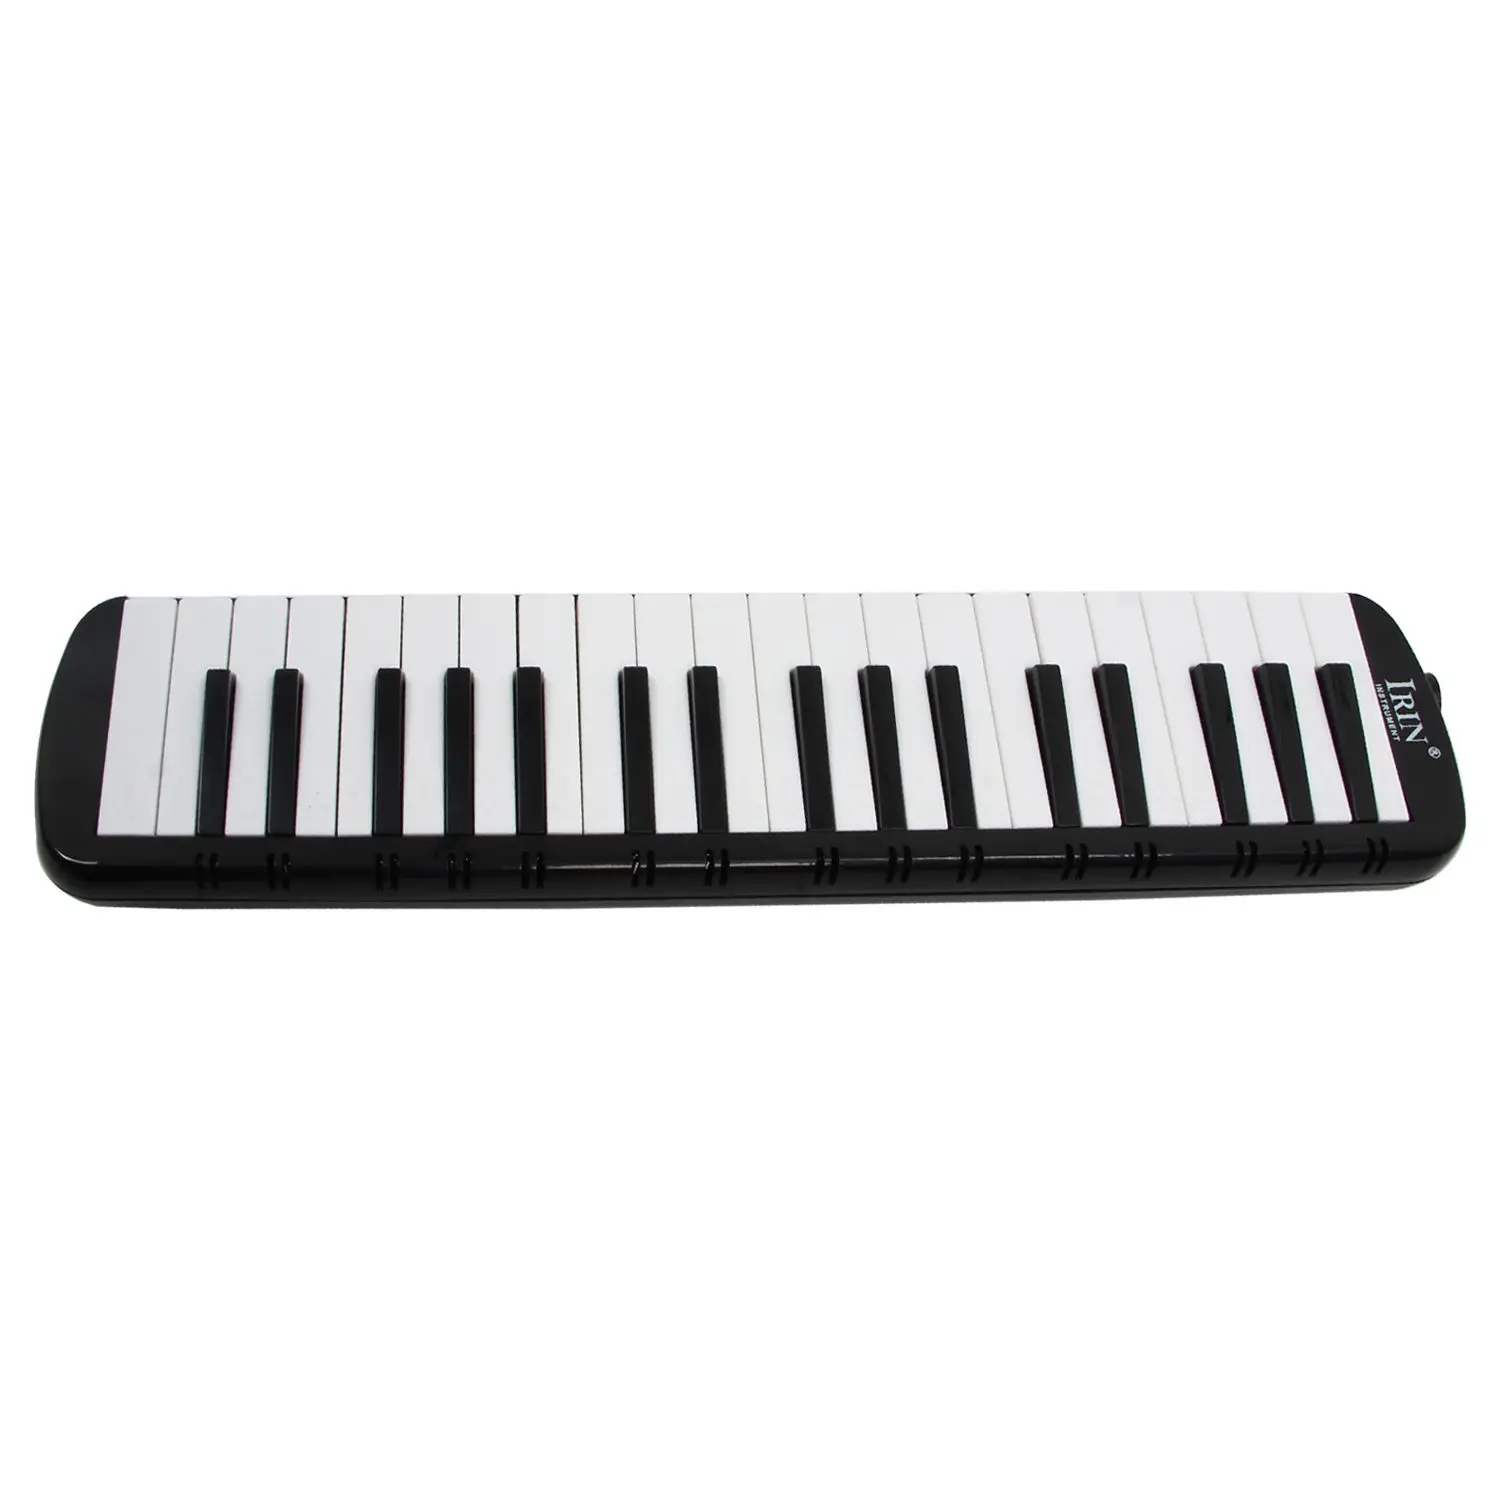 ИРИН черный 37 фортепиано ключи melodica Pianica w/сумка для переноски для студентов